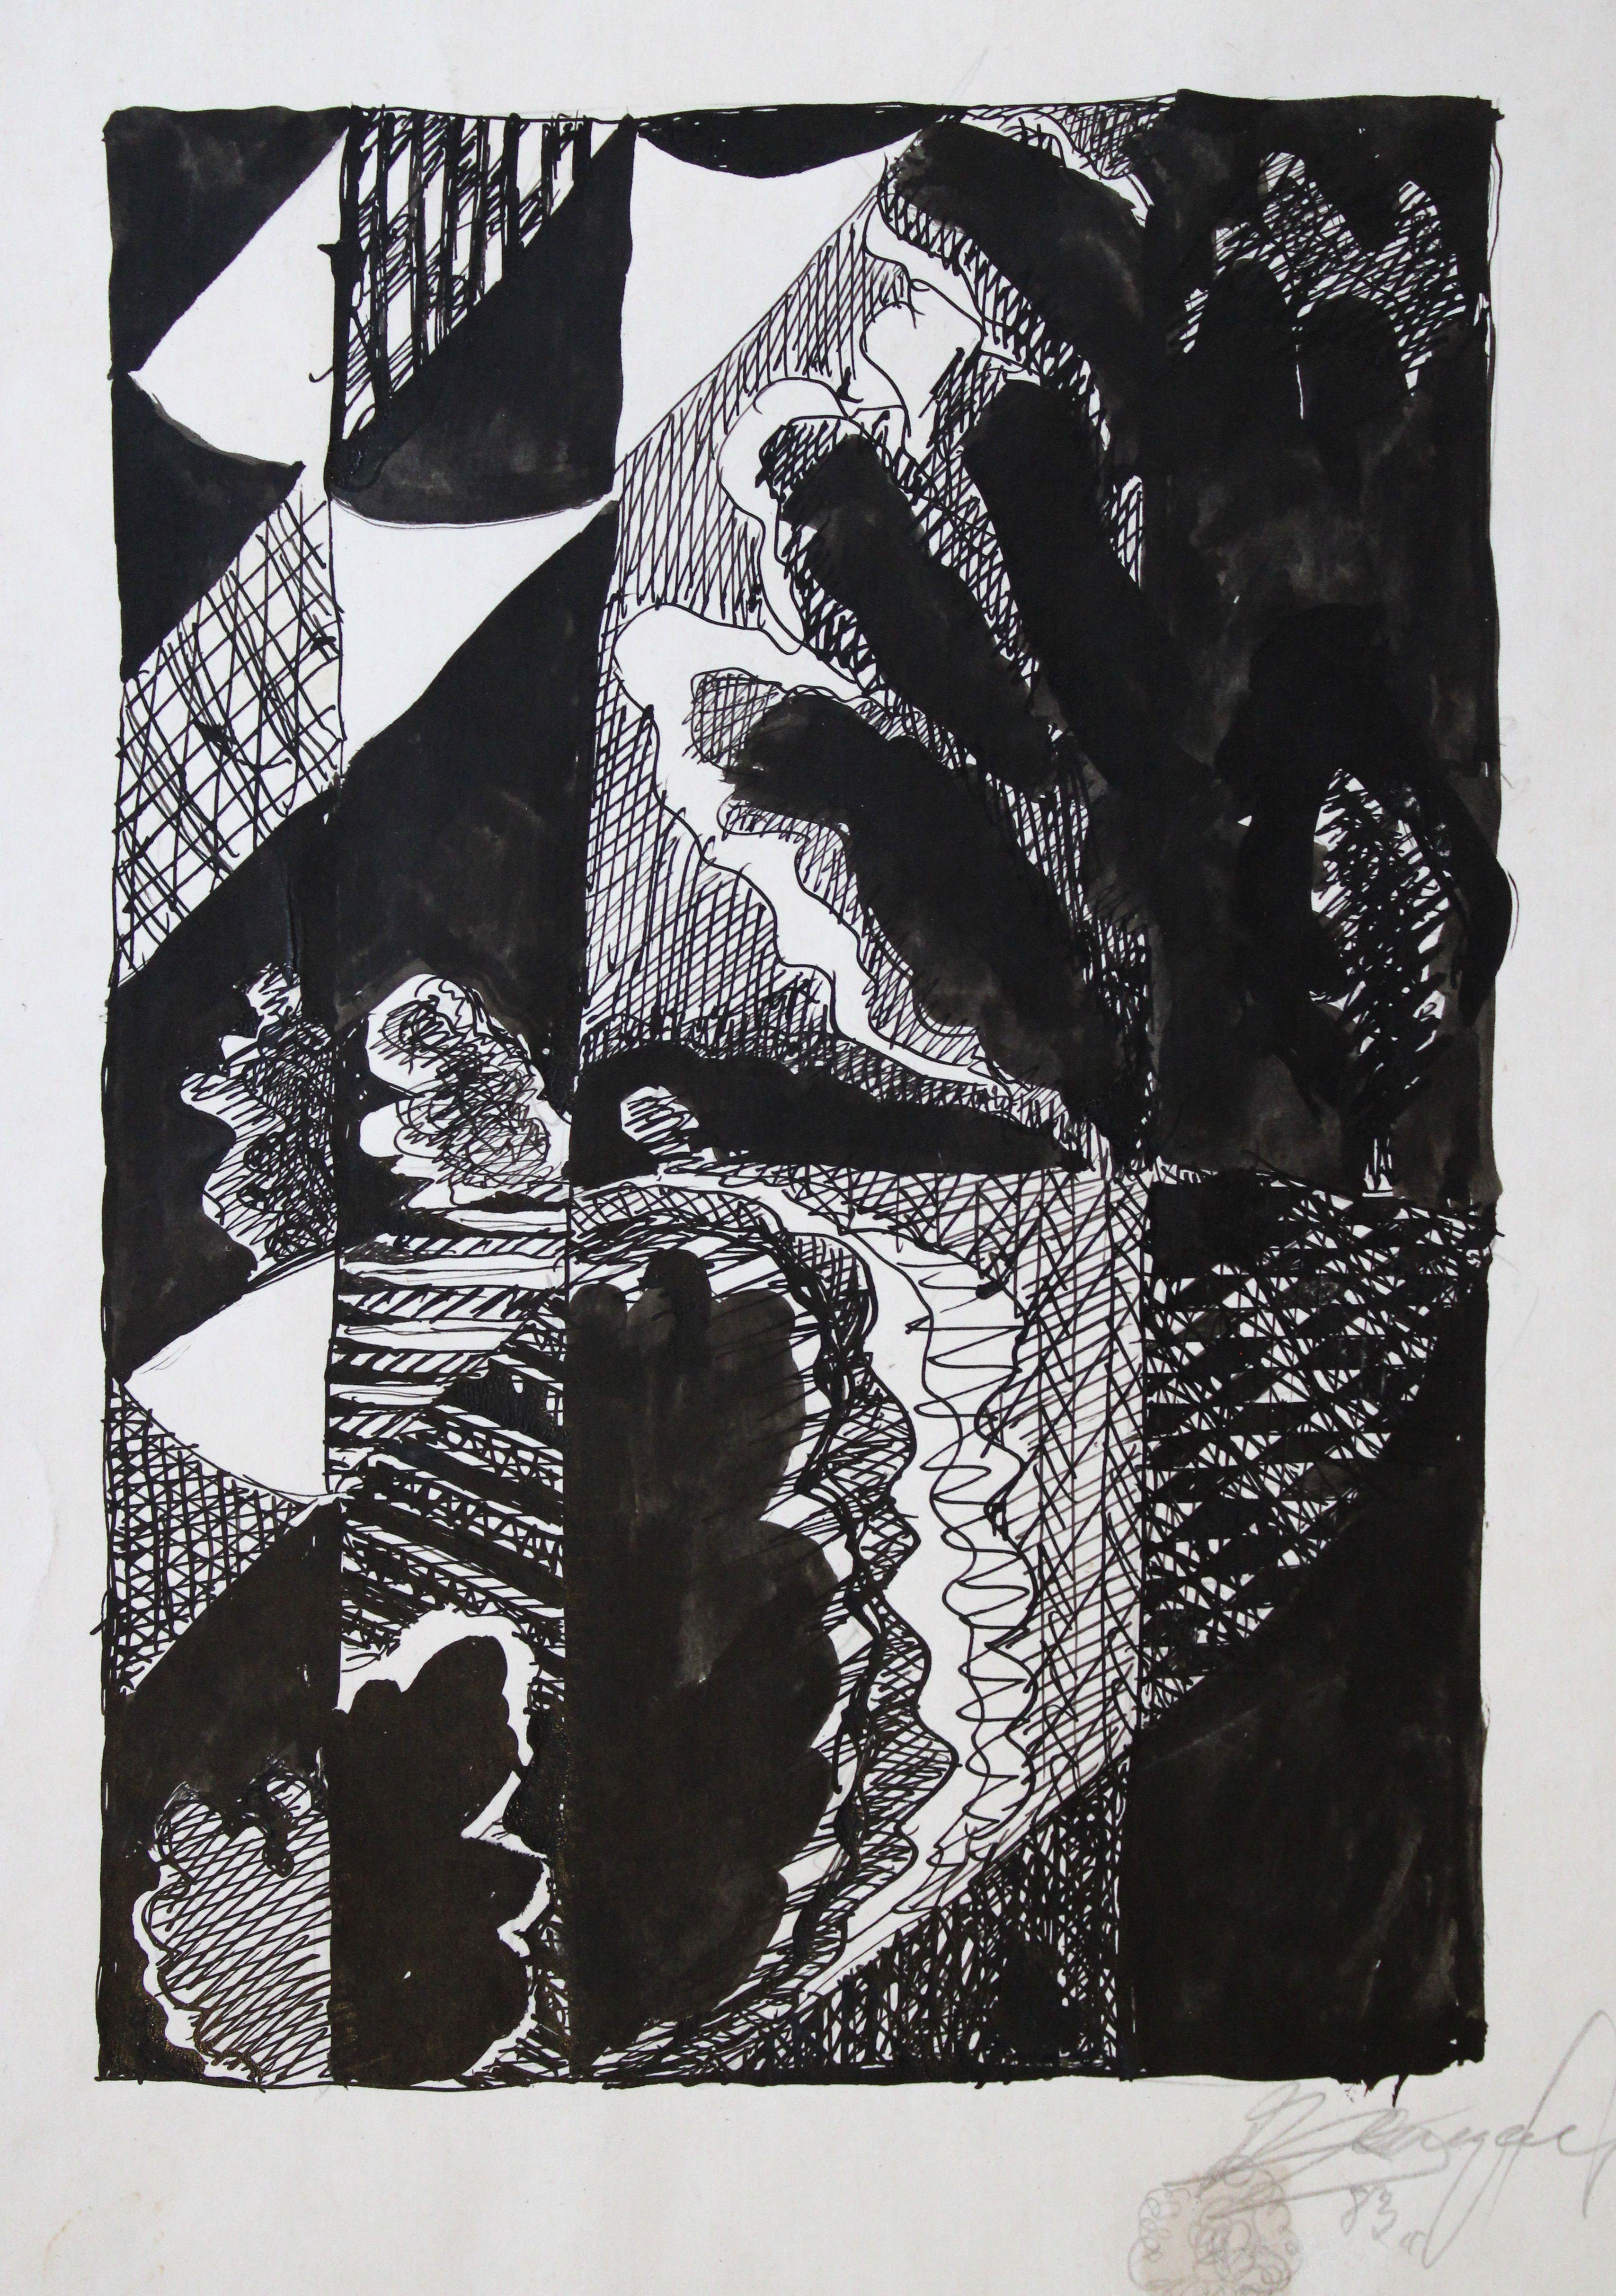 Landschaft. 1983, Papier, Tinte, 27x19 cm, Landschaft